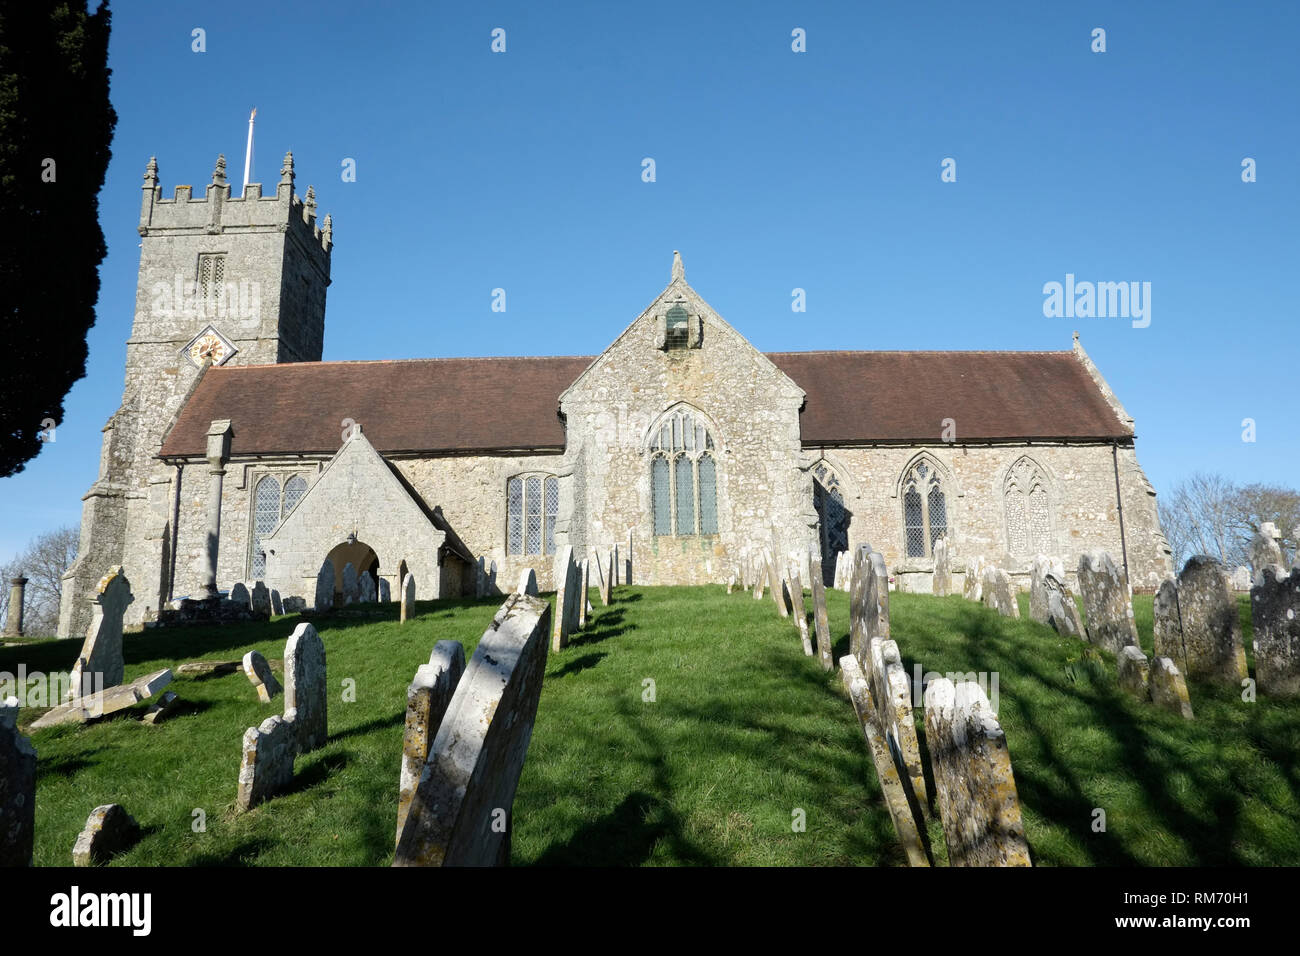 All Saints Church, Godshill, île de Wight, au Royaume-Uni. Banque D'Images